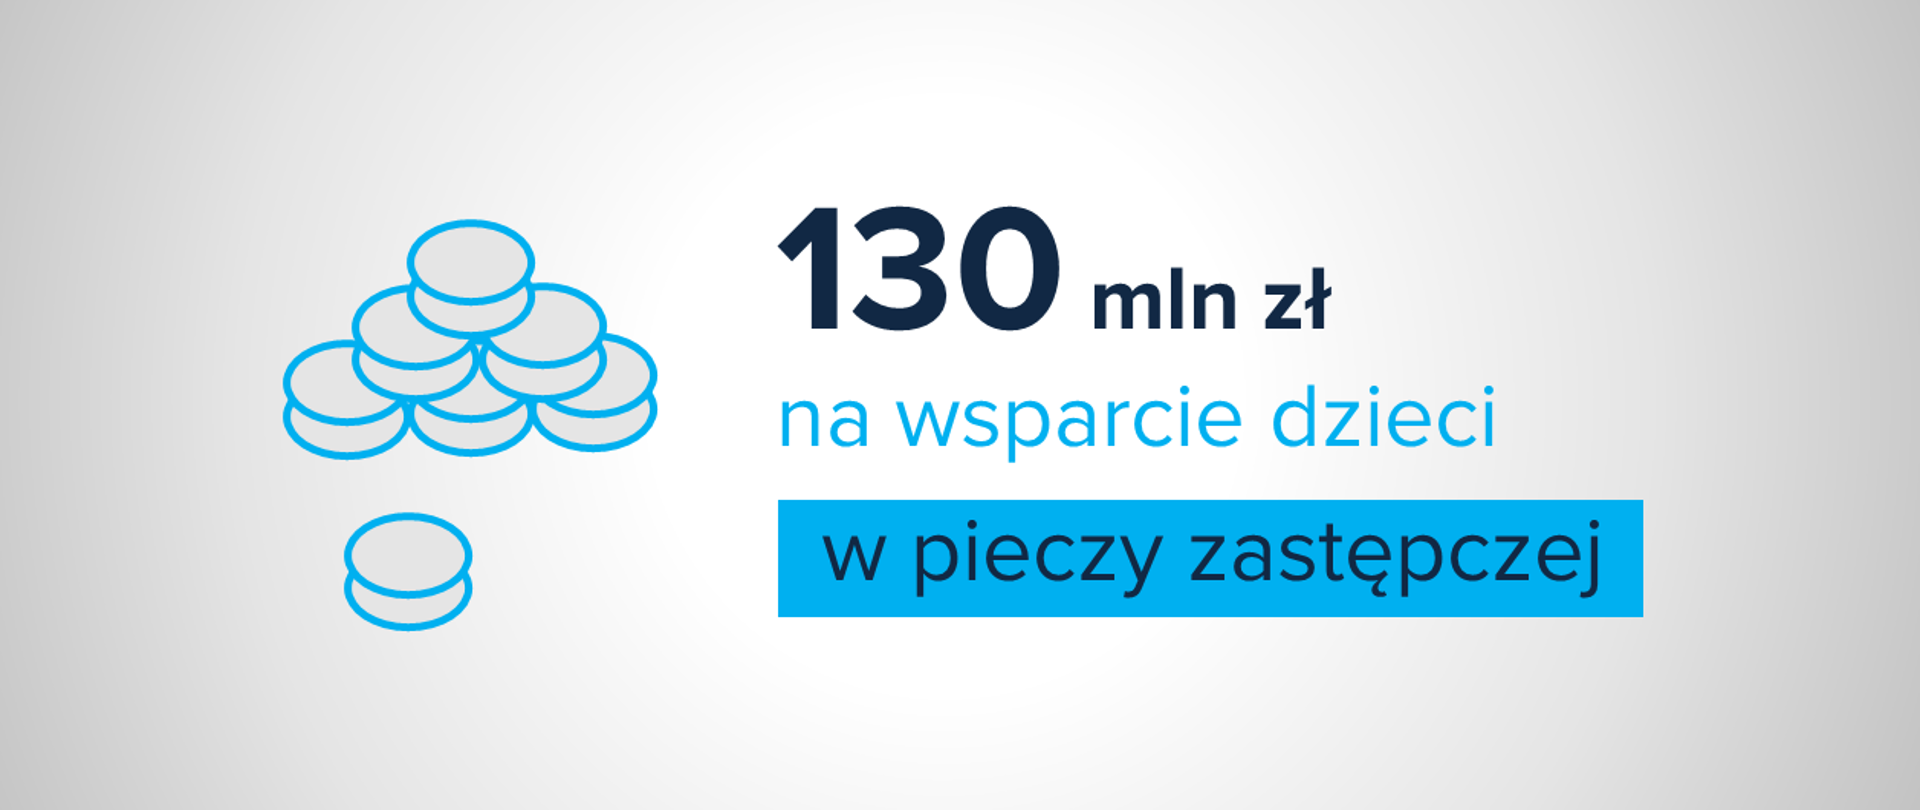 Jasna grafika z ikoną monet oraz tekstem "130 mln zł na wsparcie dzieci w pieczy zastępczej"